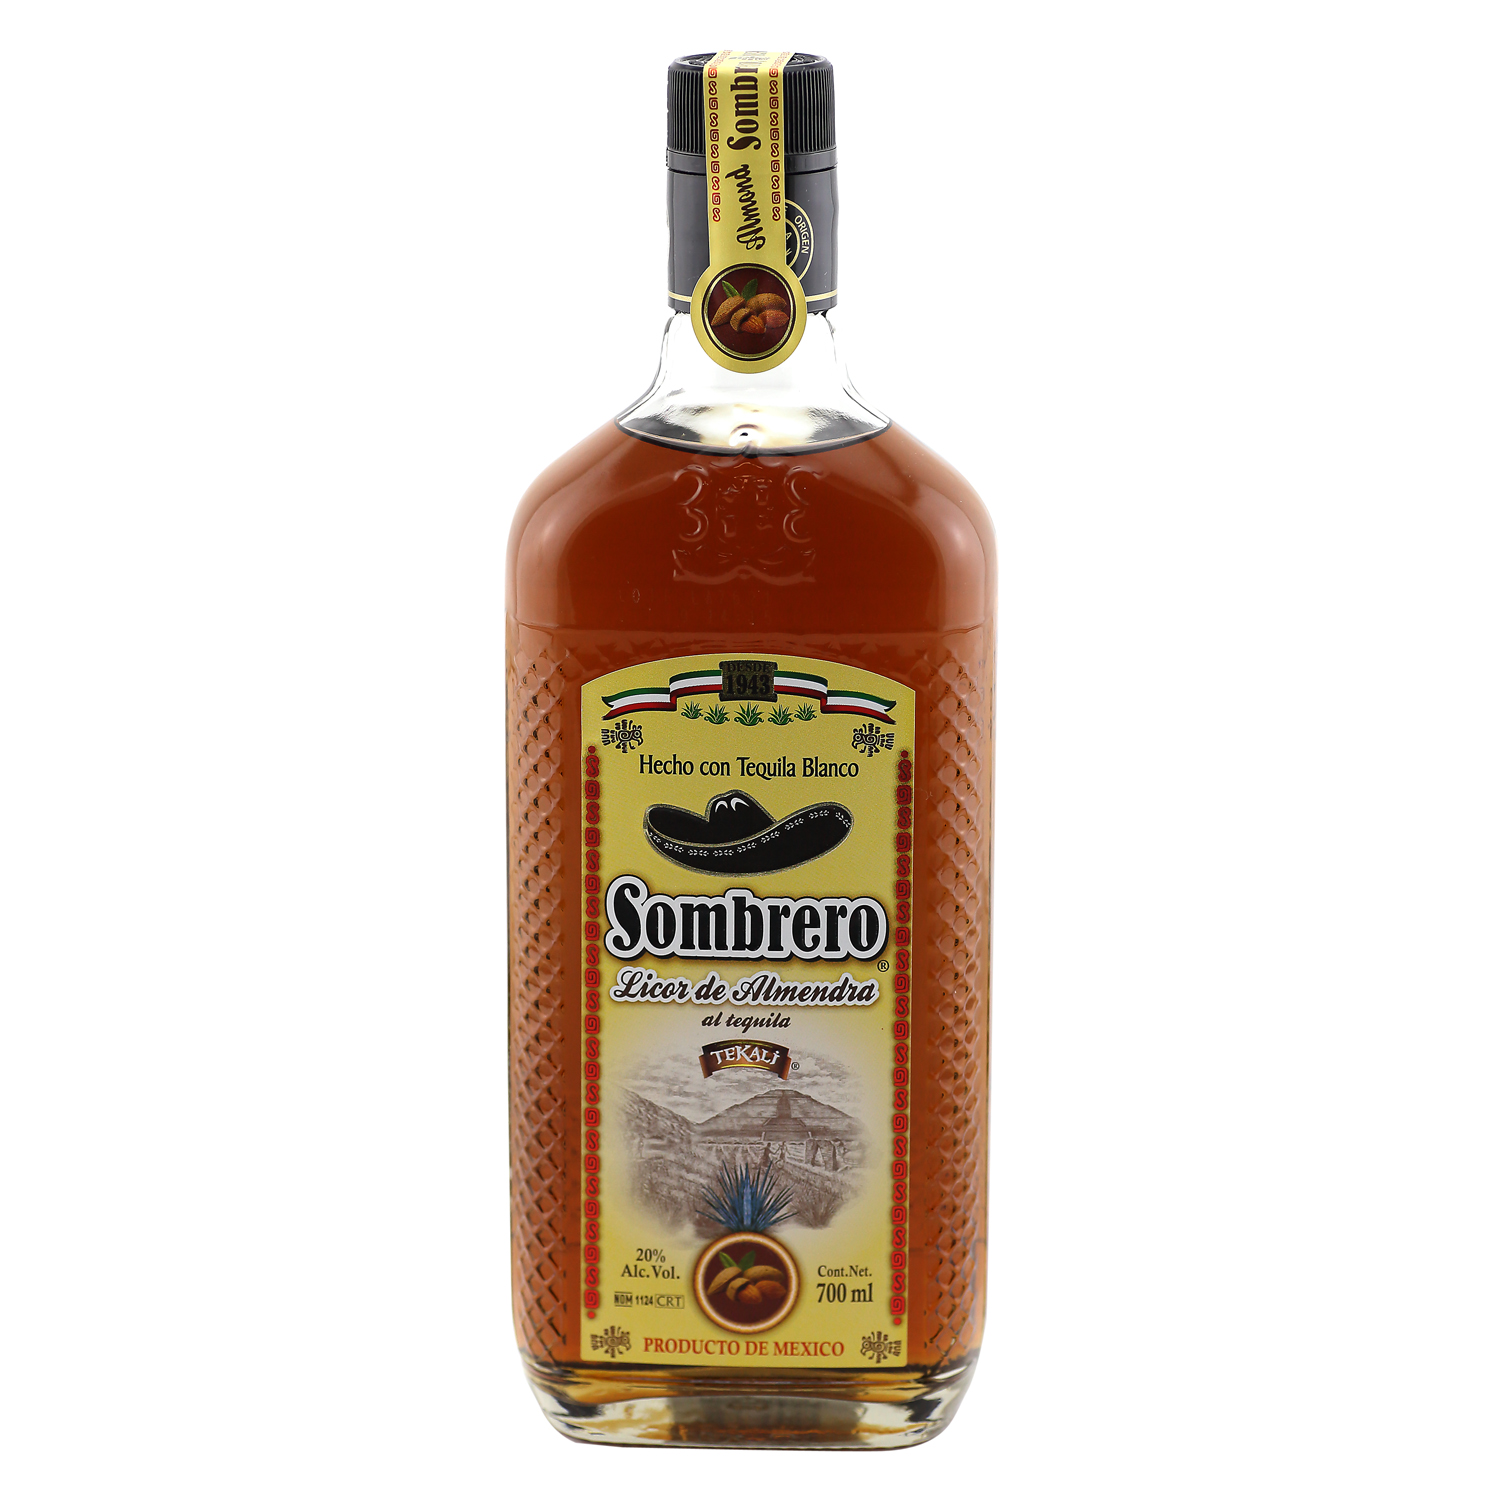 Sombrero  / Tequila Mandel Likör / 20% Vol. 0,7 ltr. / Licor de Almendra al Tequila